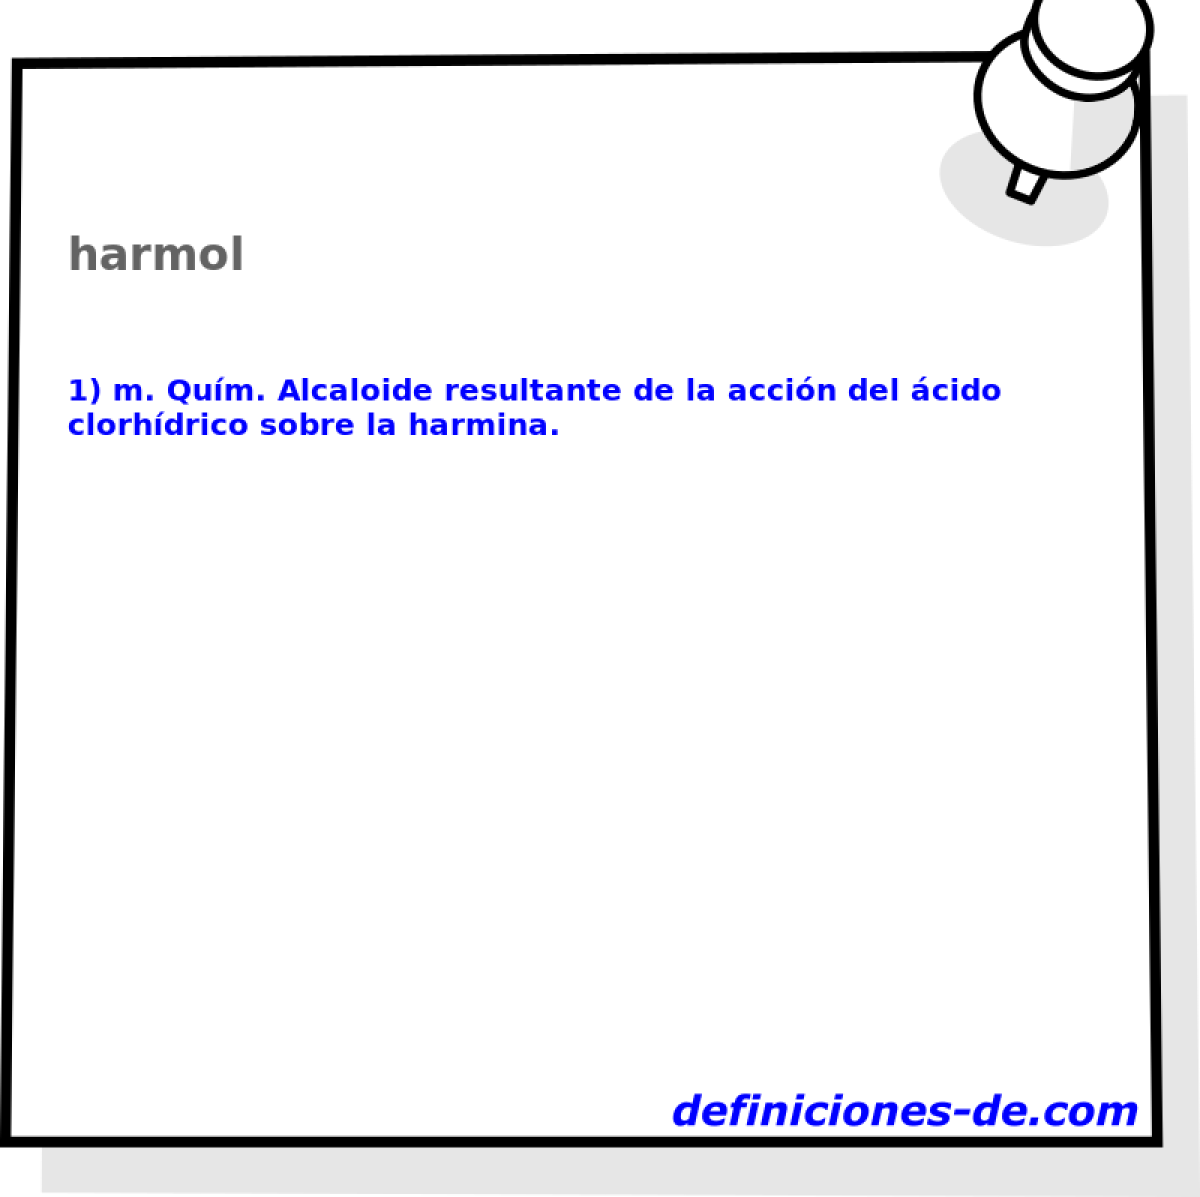 harmol 